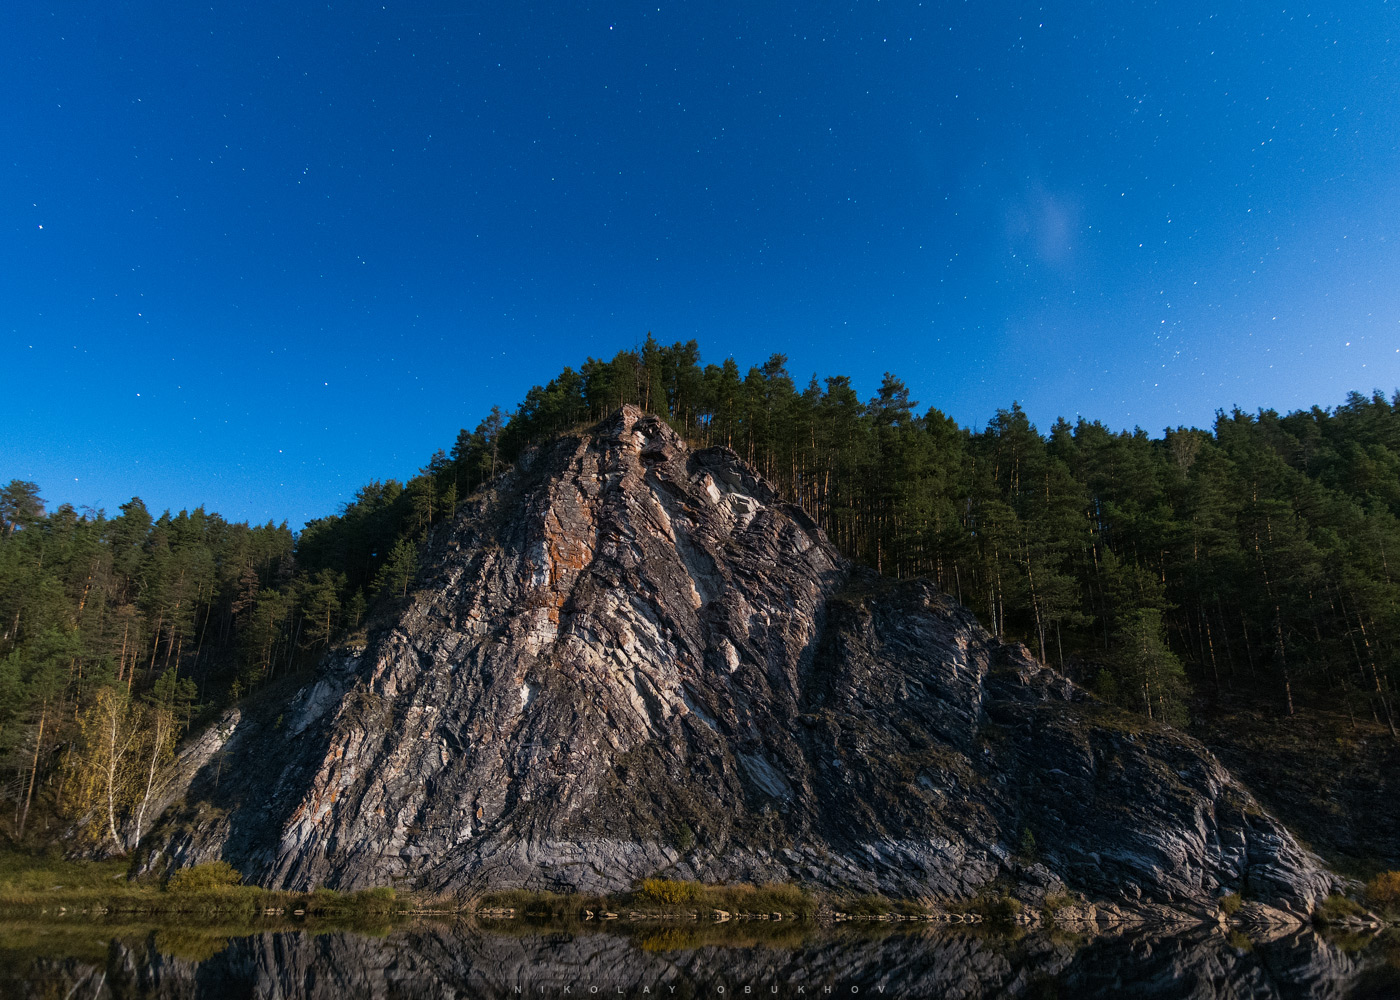 Фотография 5. Пример съемки ночного пейзажа в полнолуние. Камера Никон  Д7100 с объективом Токина 11-16/2.8. 11 mm, ISO 2500, f/2.8, 20 s, 1 кадр.